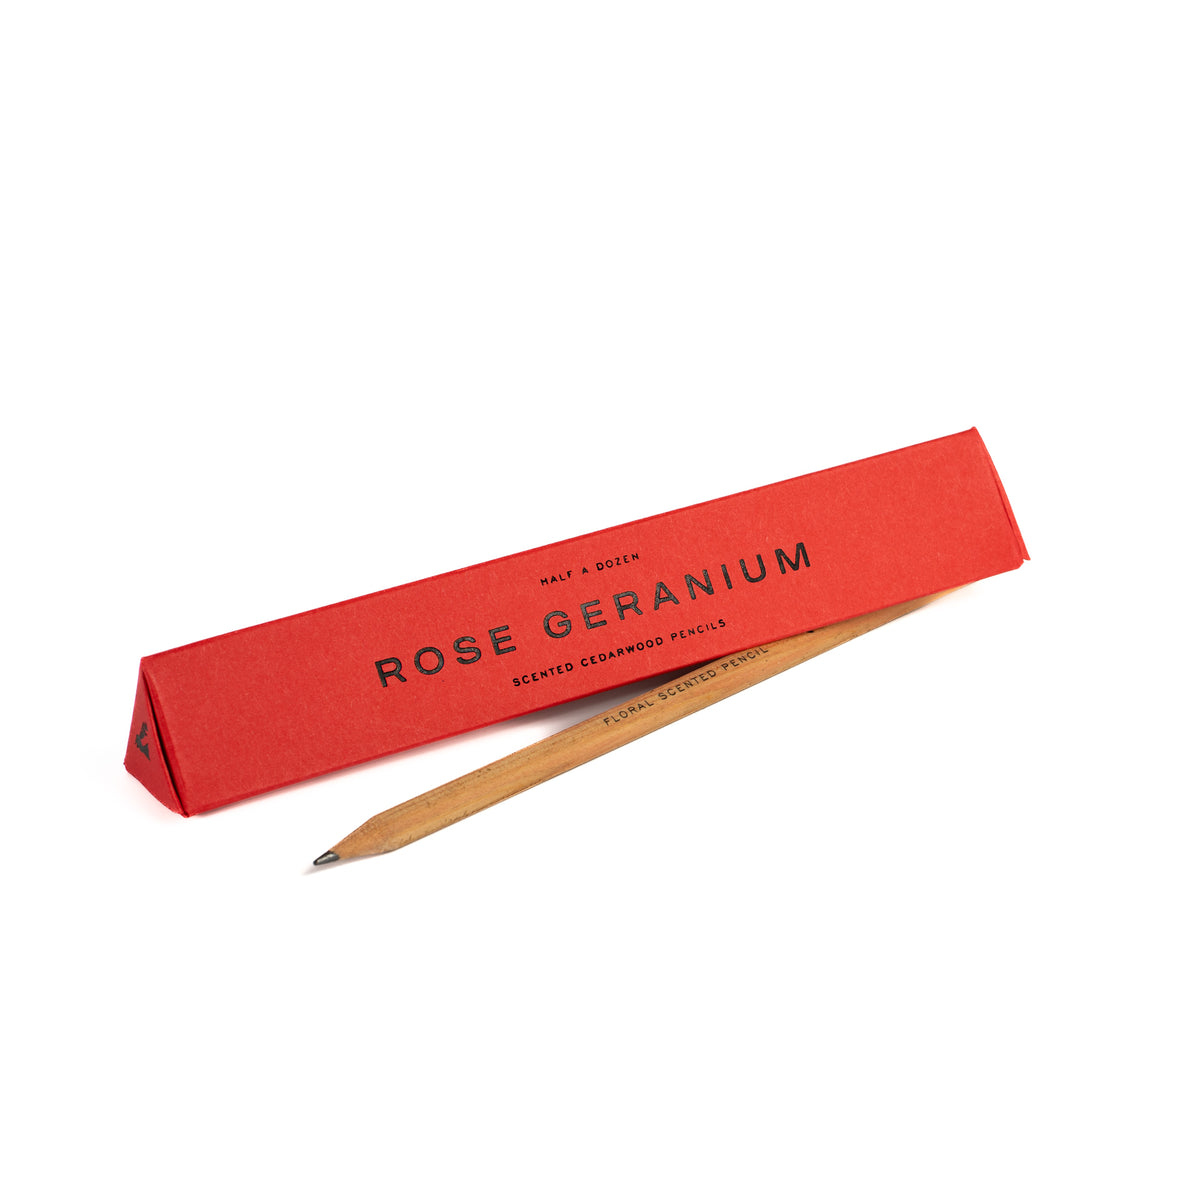 Rose geranium scented pencils